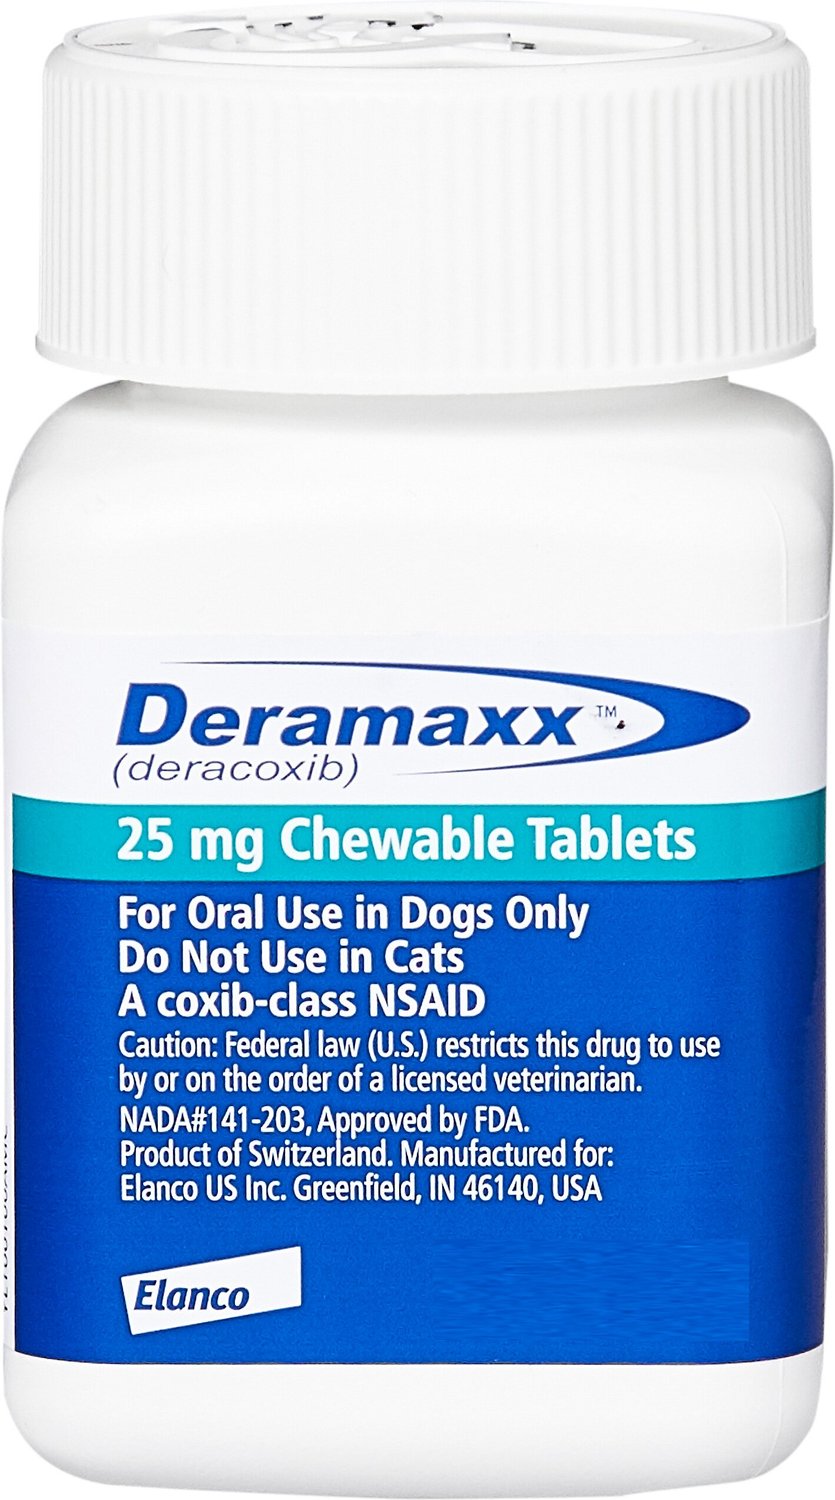 deramaxx dog medicine